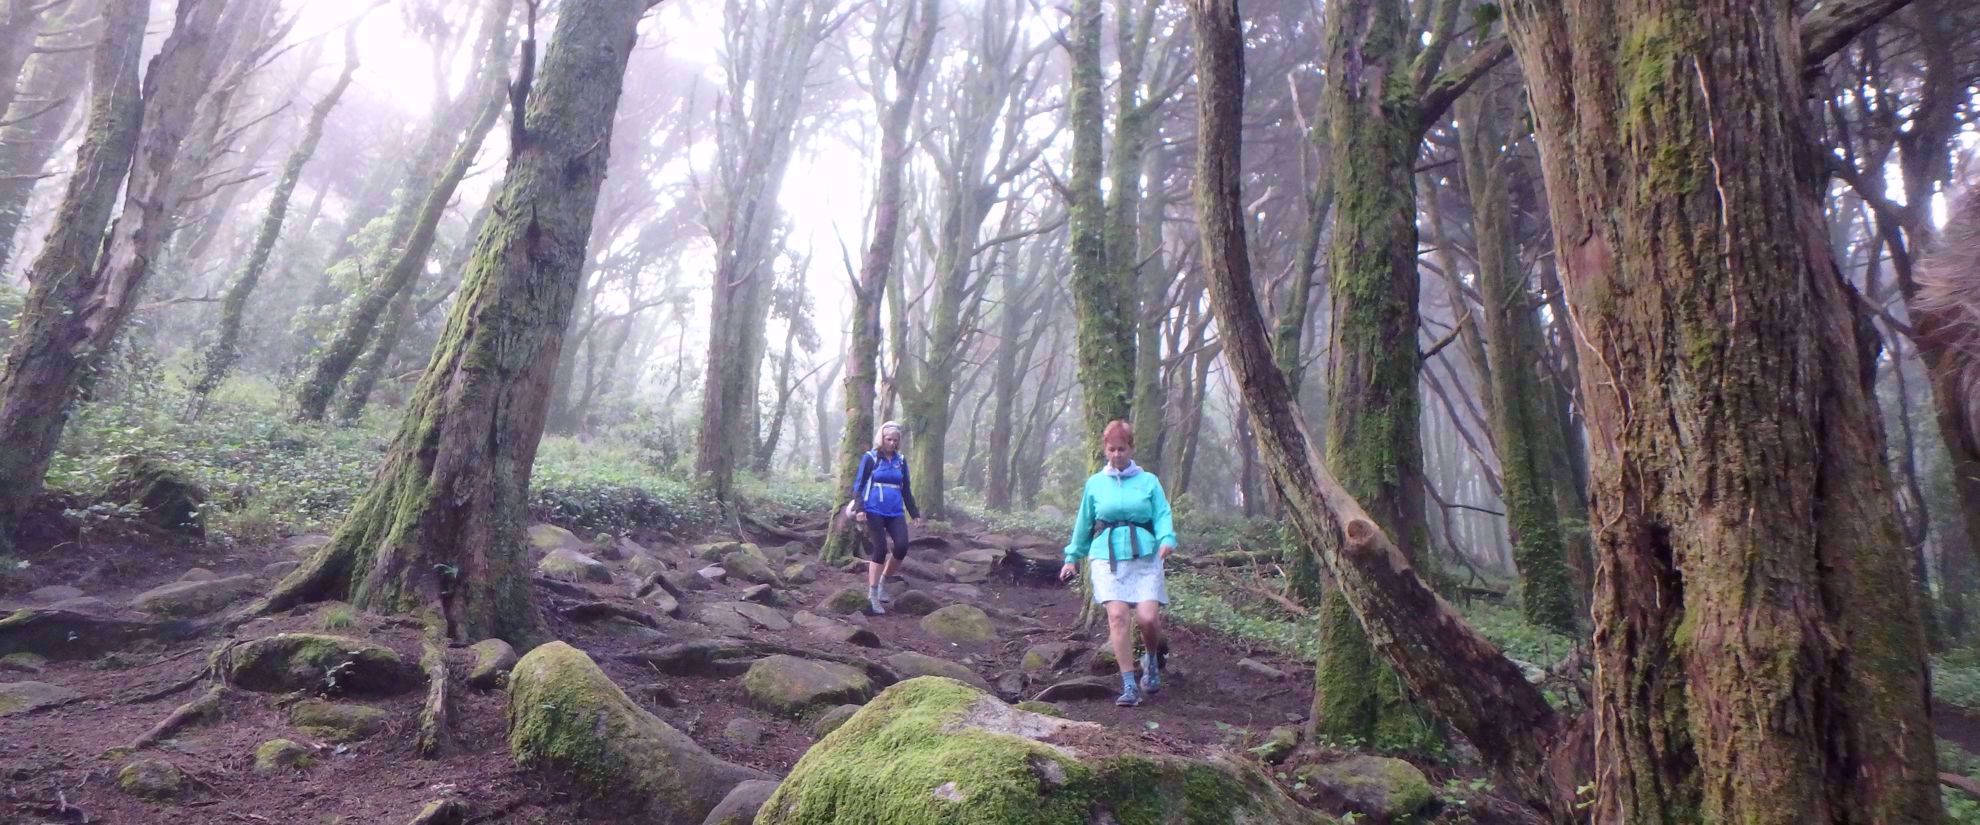 women hiking through foggy forest portugal